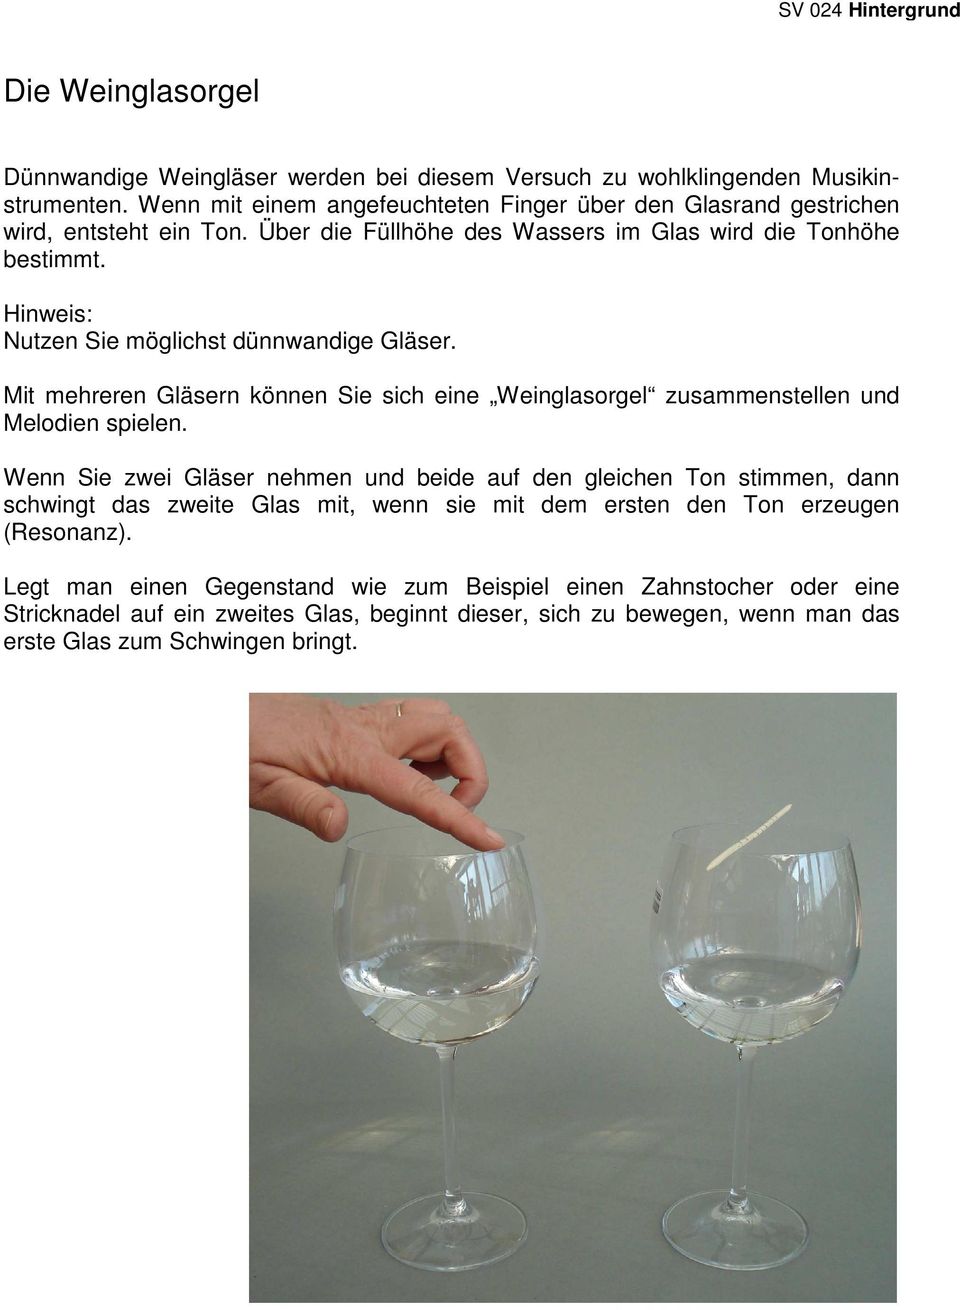 Hinweis: Nutzen Sie möglichst dünnwandige Gläser. Mit mehreren Gläsern können Sie sich eine Weinglasorgel zusammenstellen und Melodien spielen.